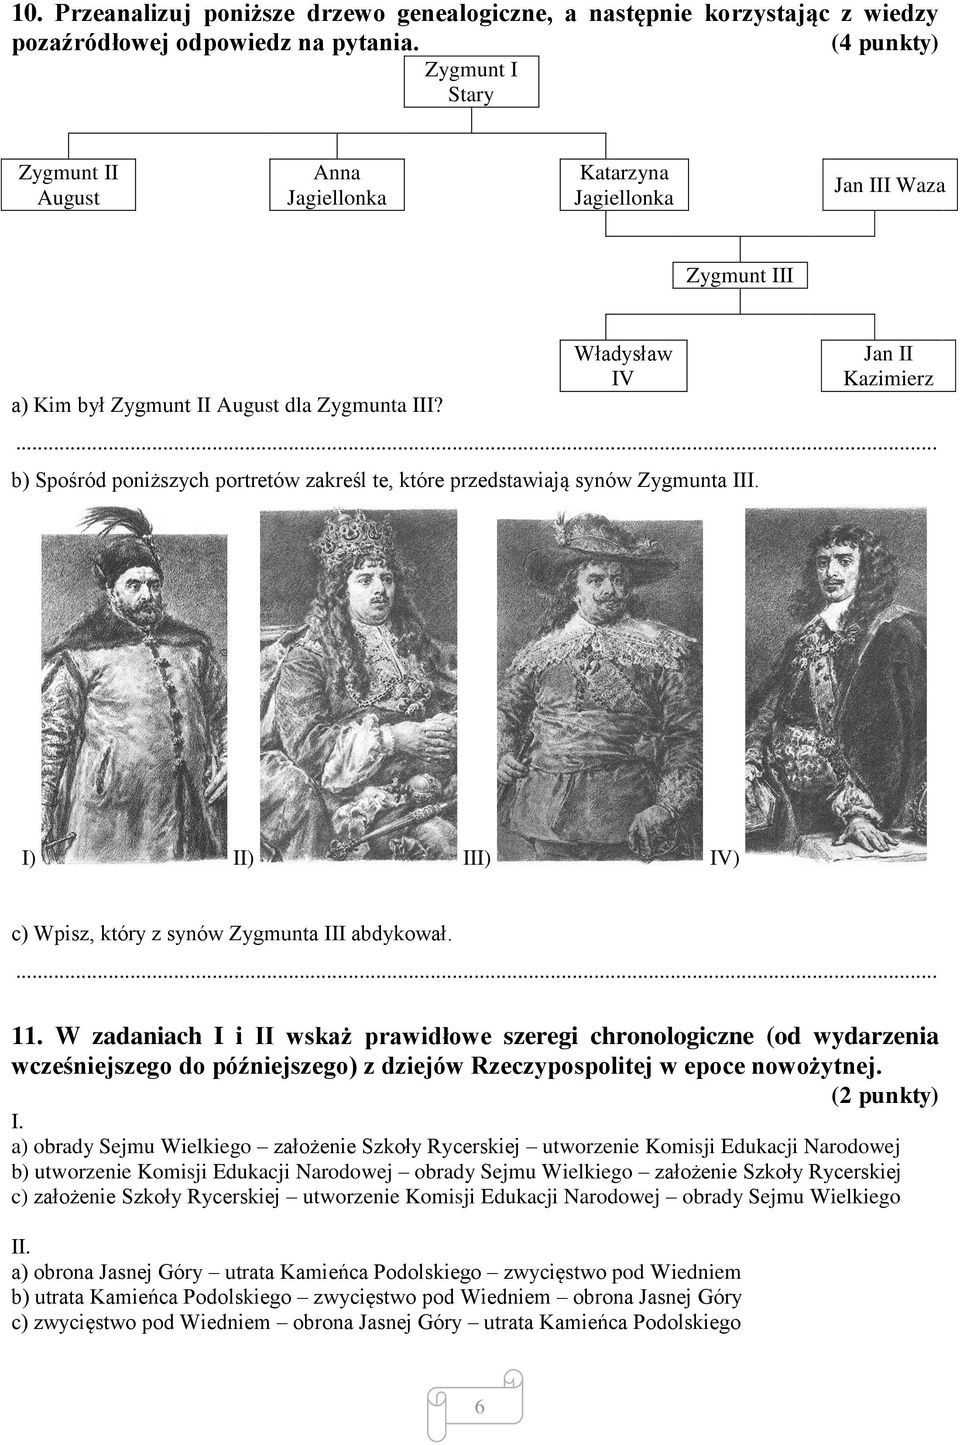 .. b) Spośród poniższych portretów zakreśl te, które przedstawiają synów Zygmunta III. I) II) III) IV) c) Wpisz, który z synów Zygmunta III abdykował.... 11.